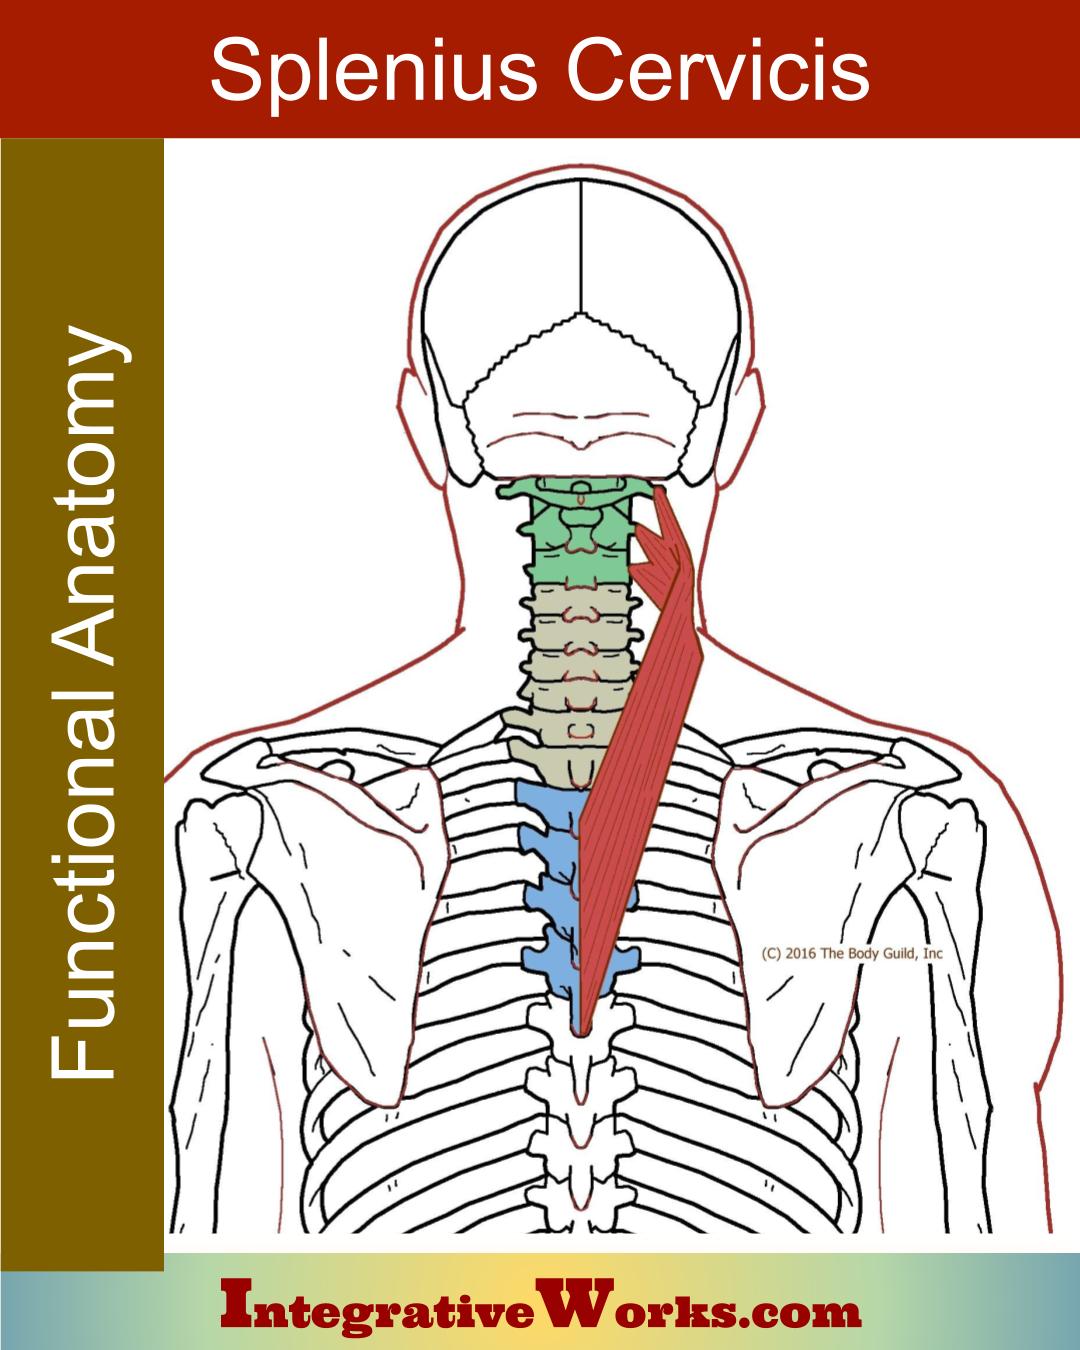 Splenius Cervicis – Functional Anatomy